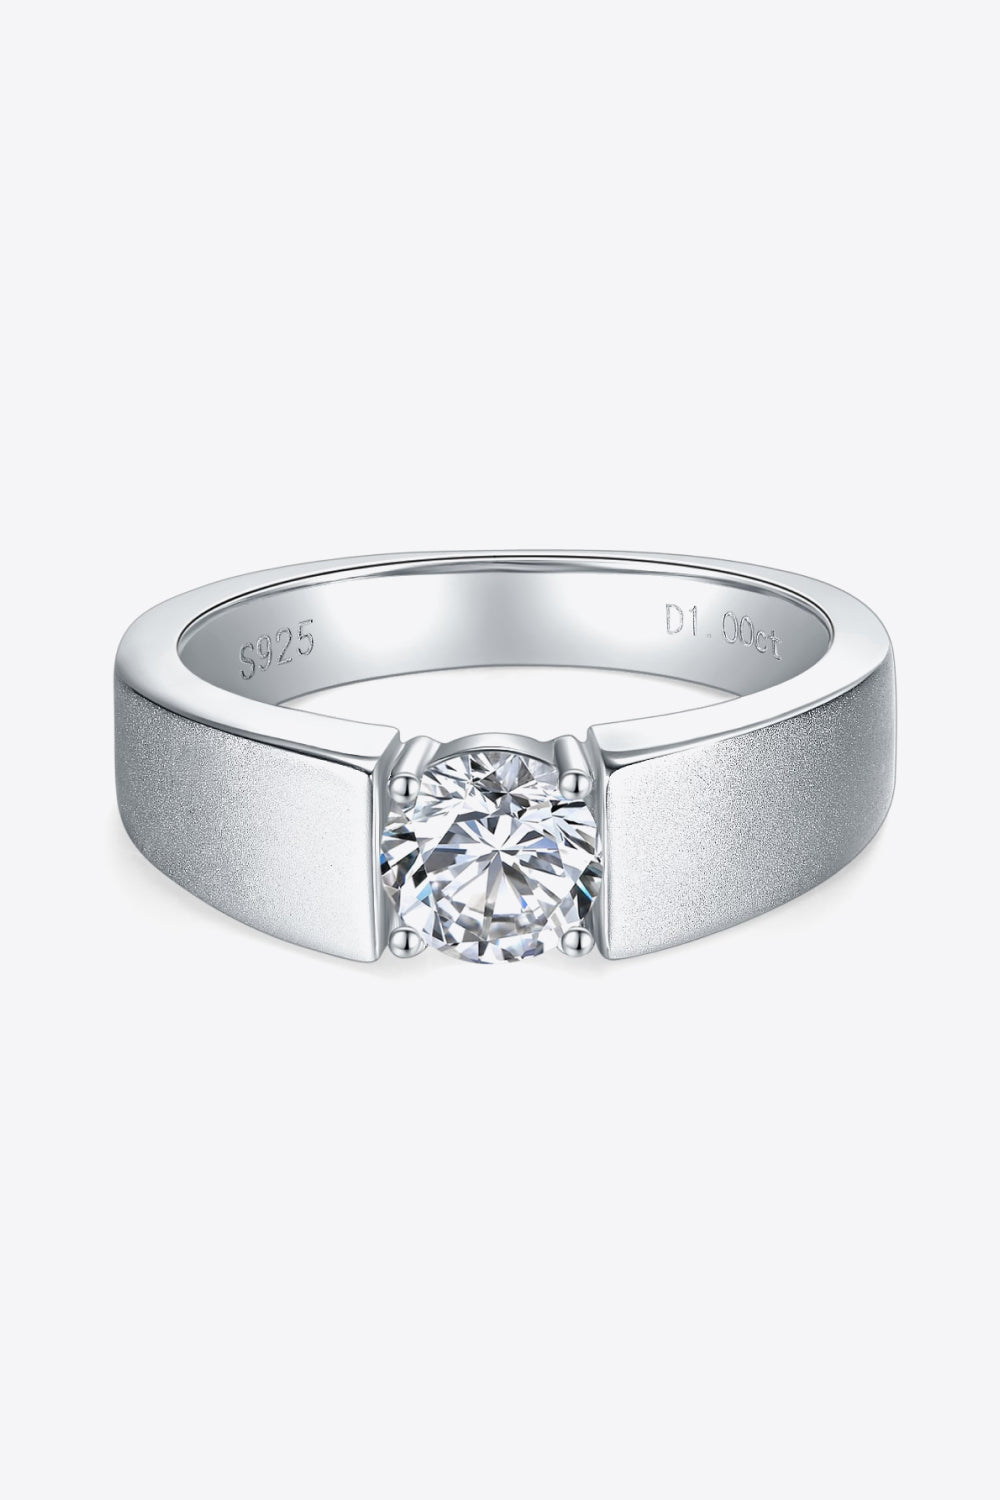 925 Sterling Silver I Carat Moissanite Ring - DromedarShop.com Online Boutique